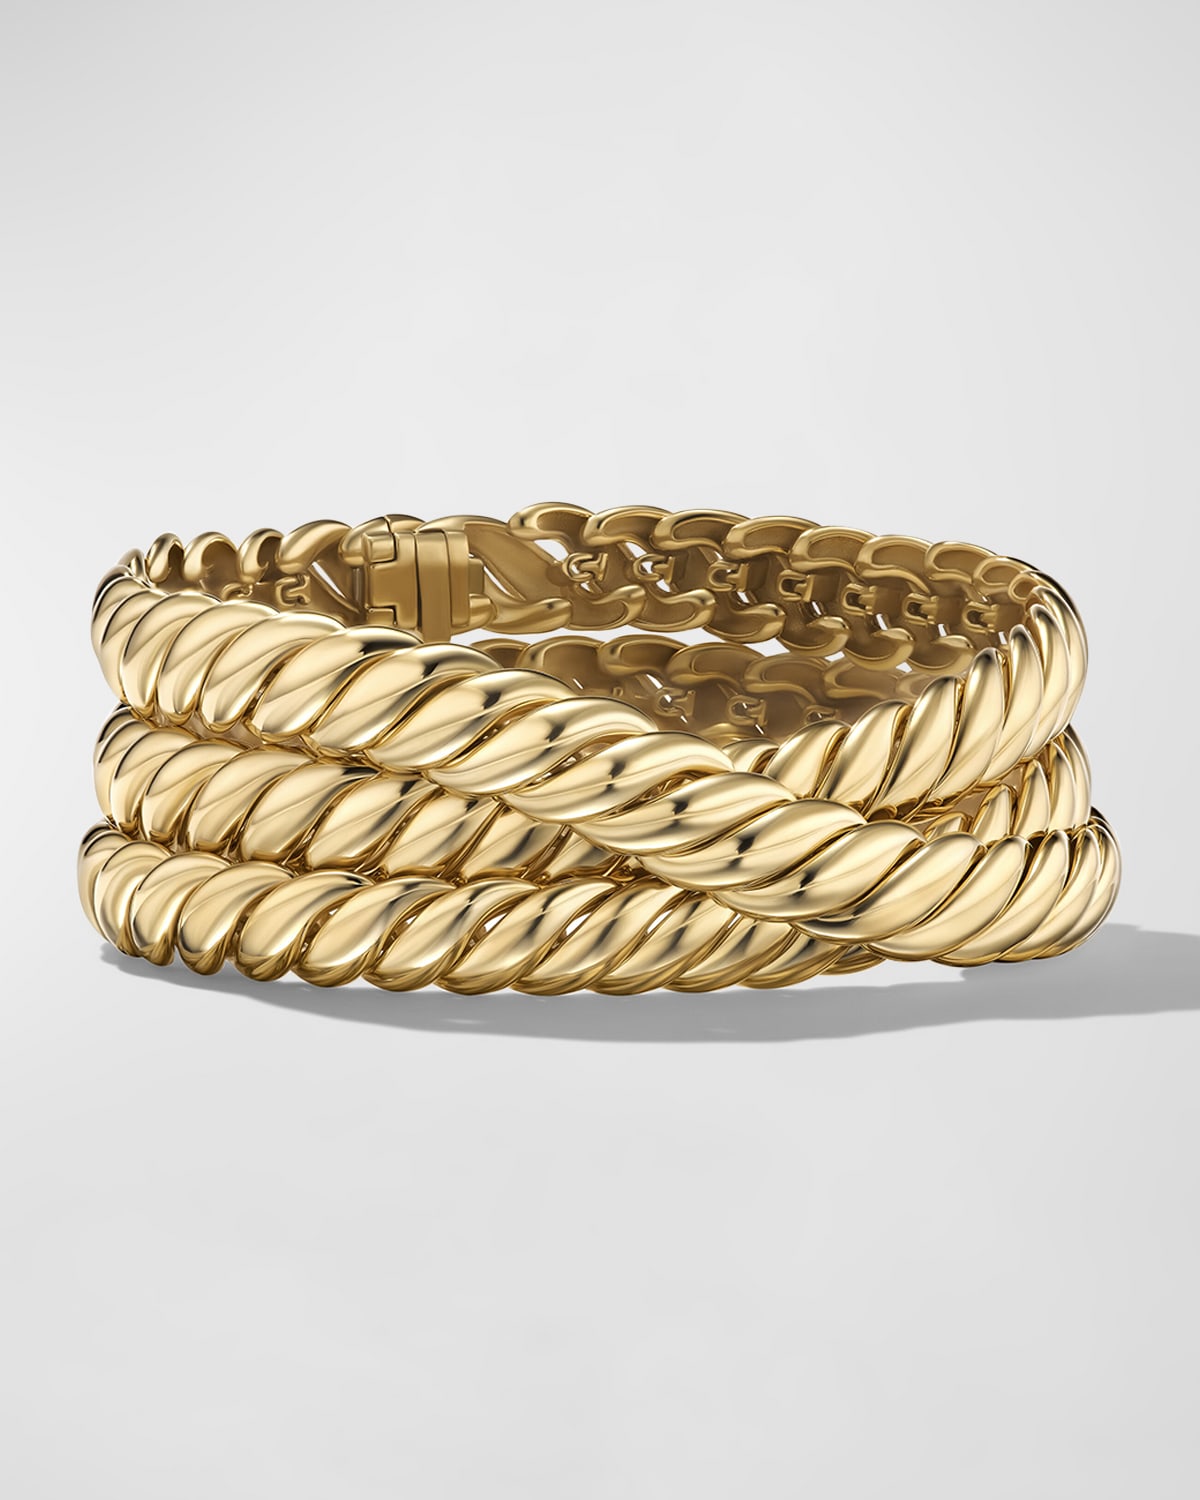 Tiffany & Co. Estate Gold Fancy Rope Bracelet